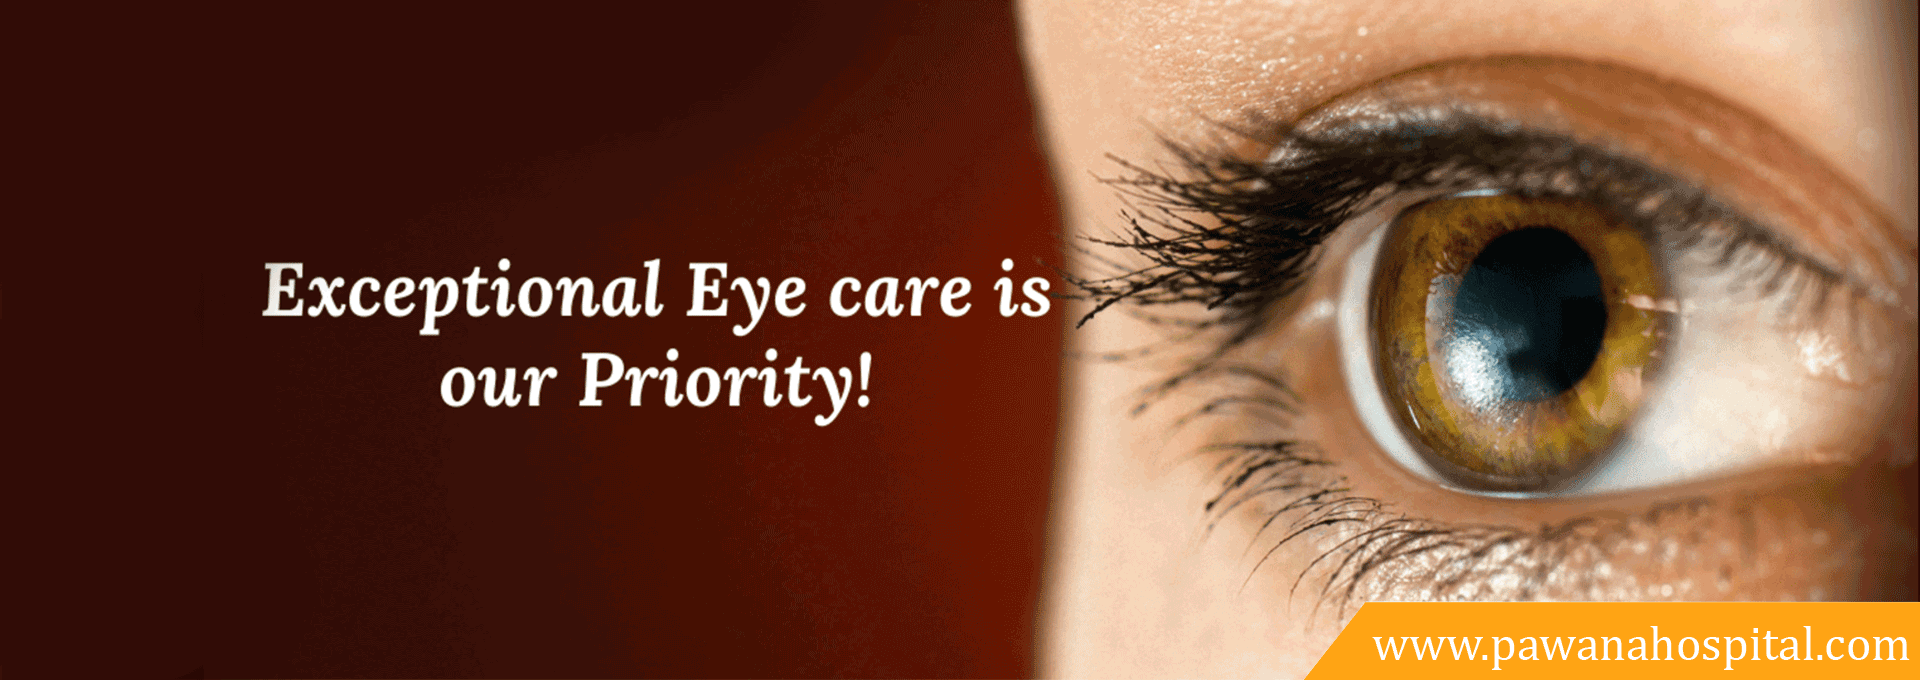 eye care hospital | pawana hospital